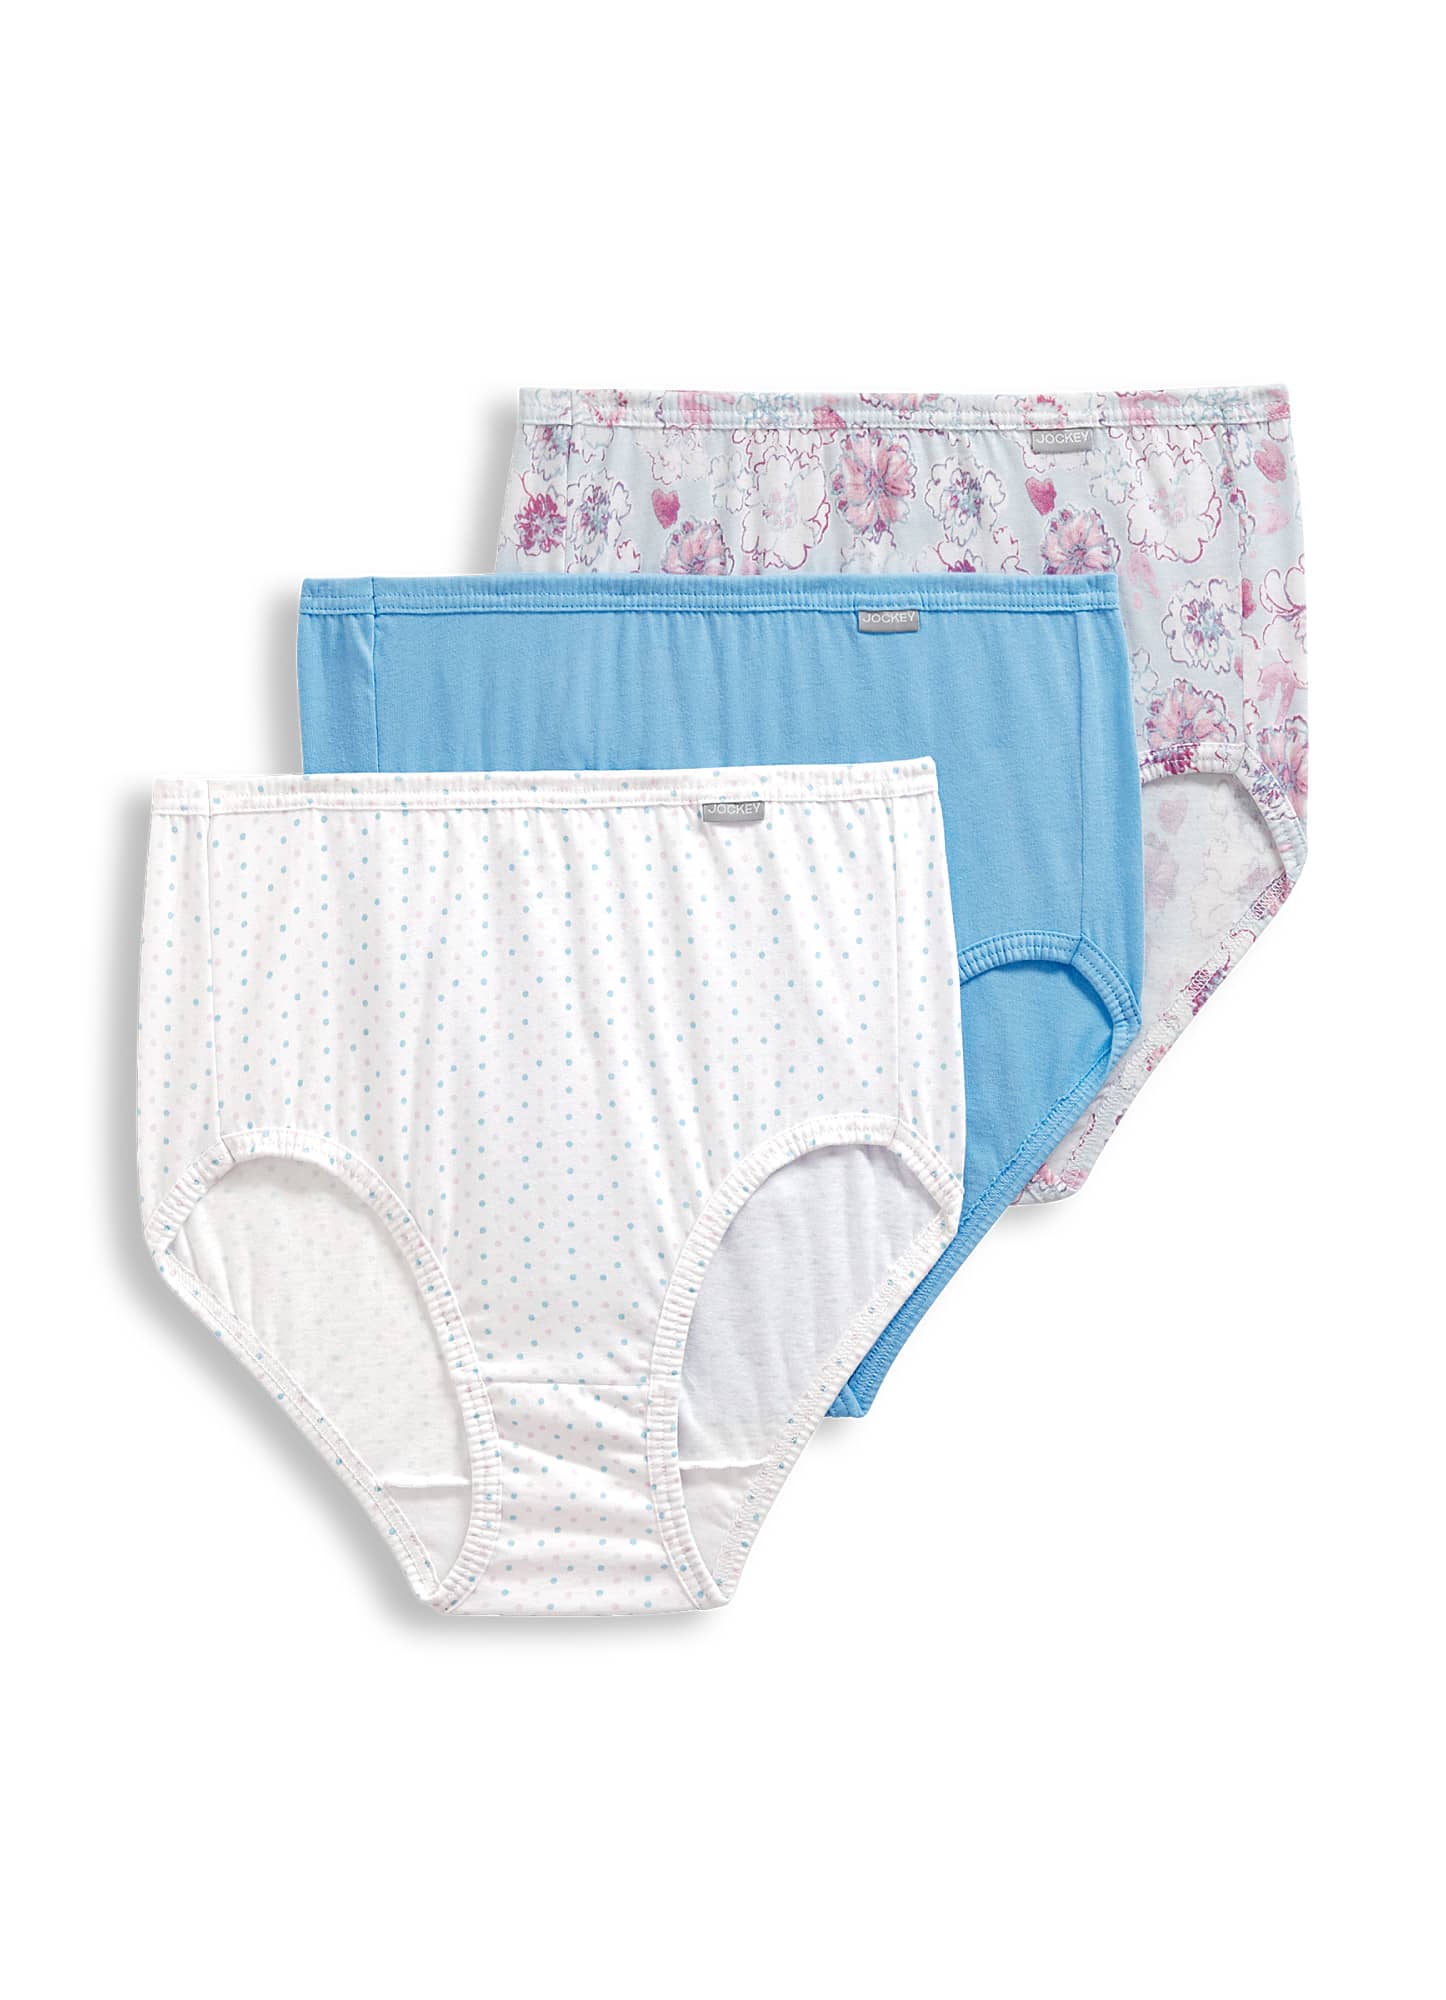 Jockey Womens Plus Size Elance Brief 3 Pack Underwear Briefs 100% ...